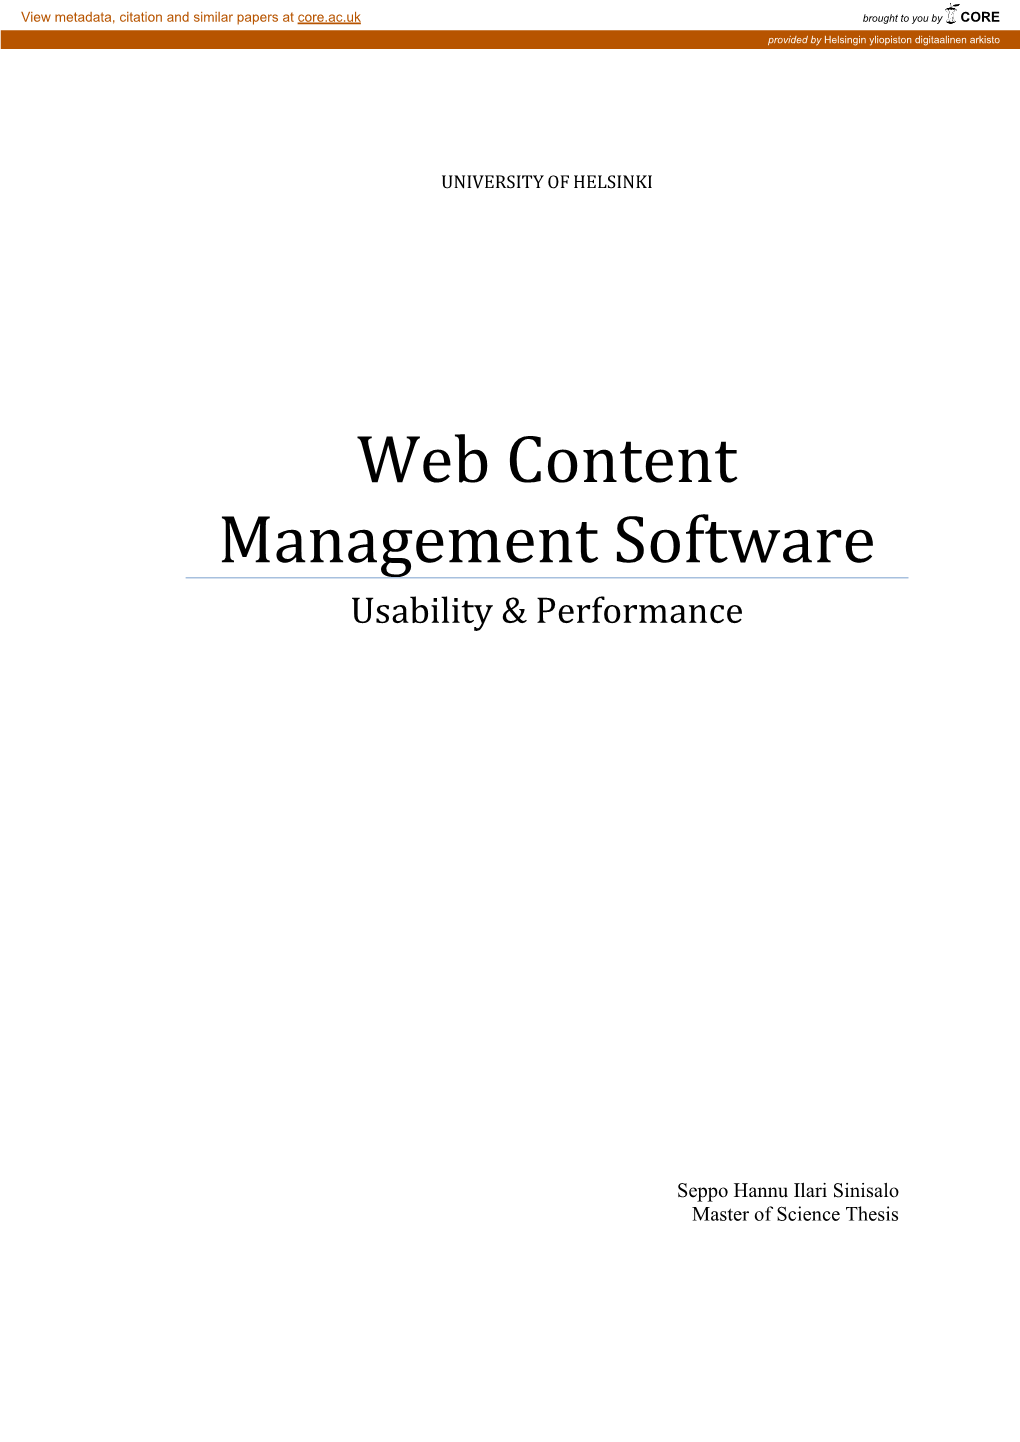 Web Content Management Software